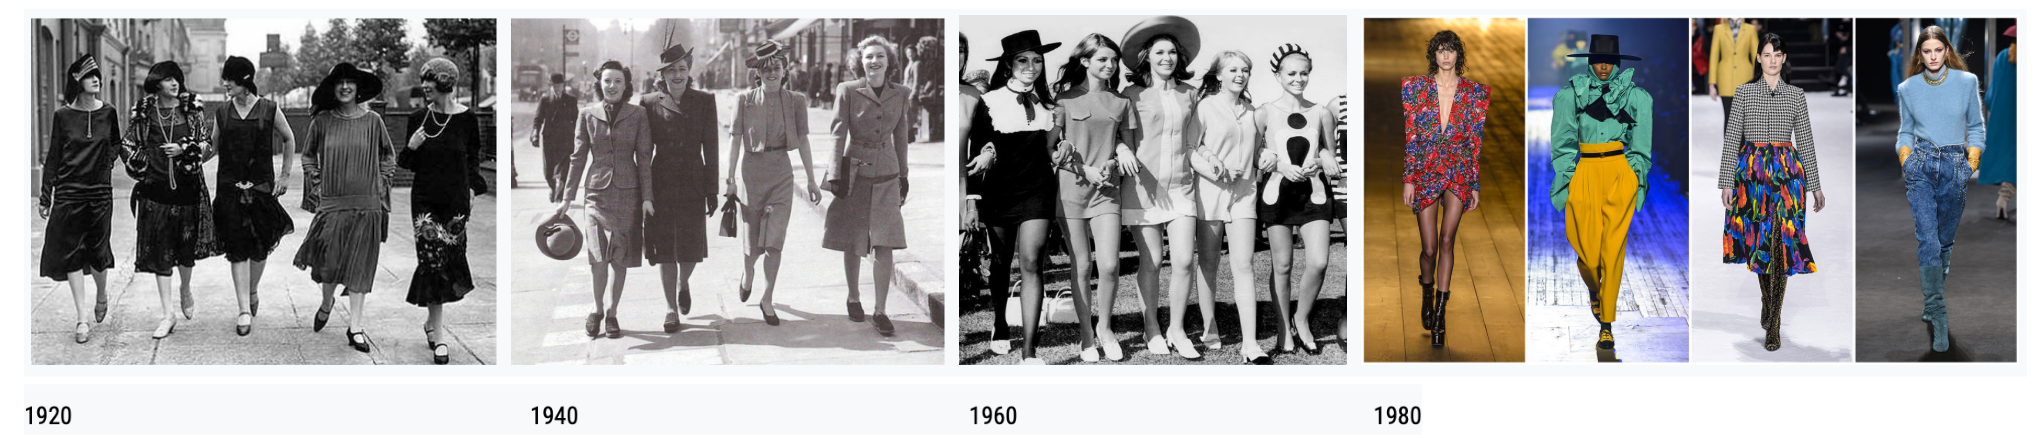 4 groupes de femmes dans les styles vestimentaires de différentes époques : 1920, 1940, 1960, 1980.